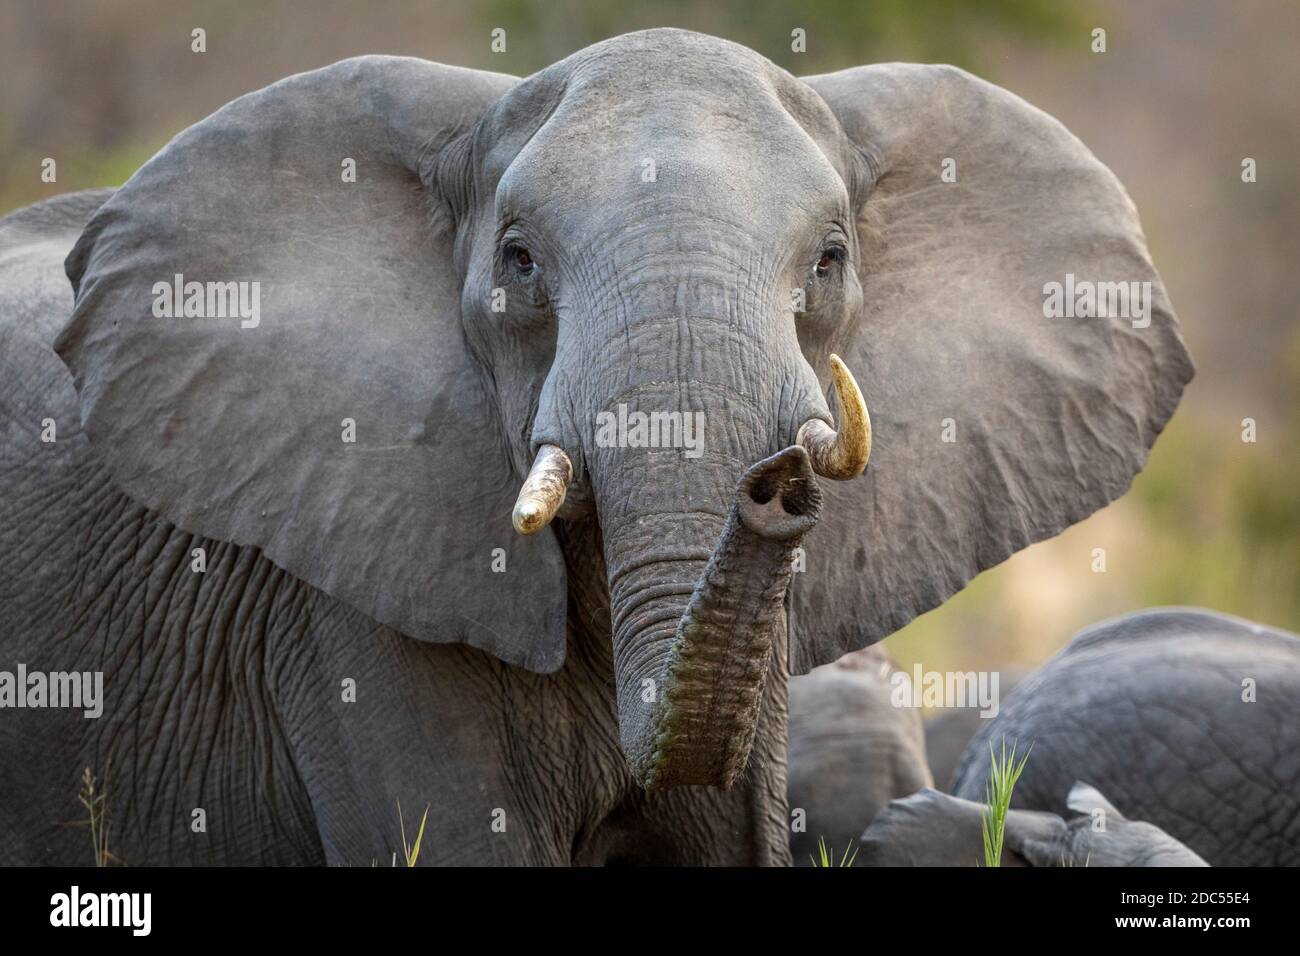 Elefantenweibchen, das unter seiner Herde von Elefanten steht und gerade schaut Bei der Kamera mit Kofferraum oben im Kruger Park im Süden Afrika Stockfoto